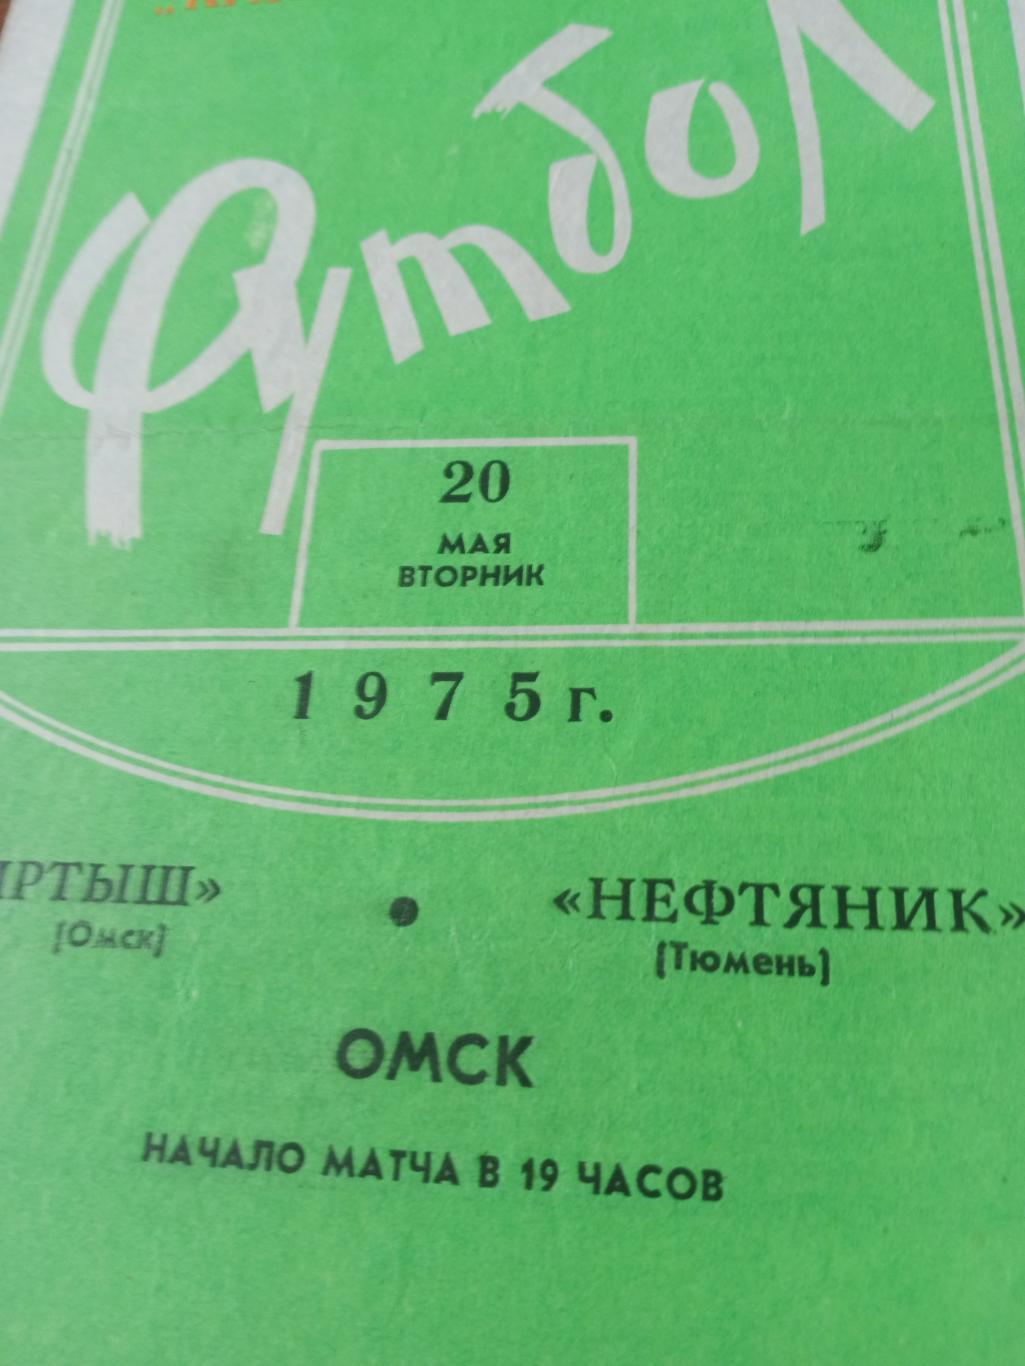 Иртыш Омск - Нефтяник Тюмень. 20 мая 1975 год